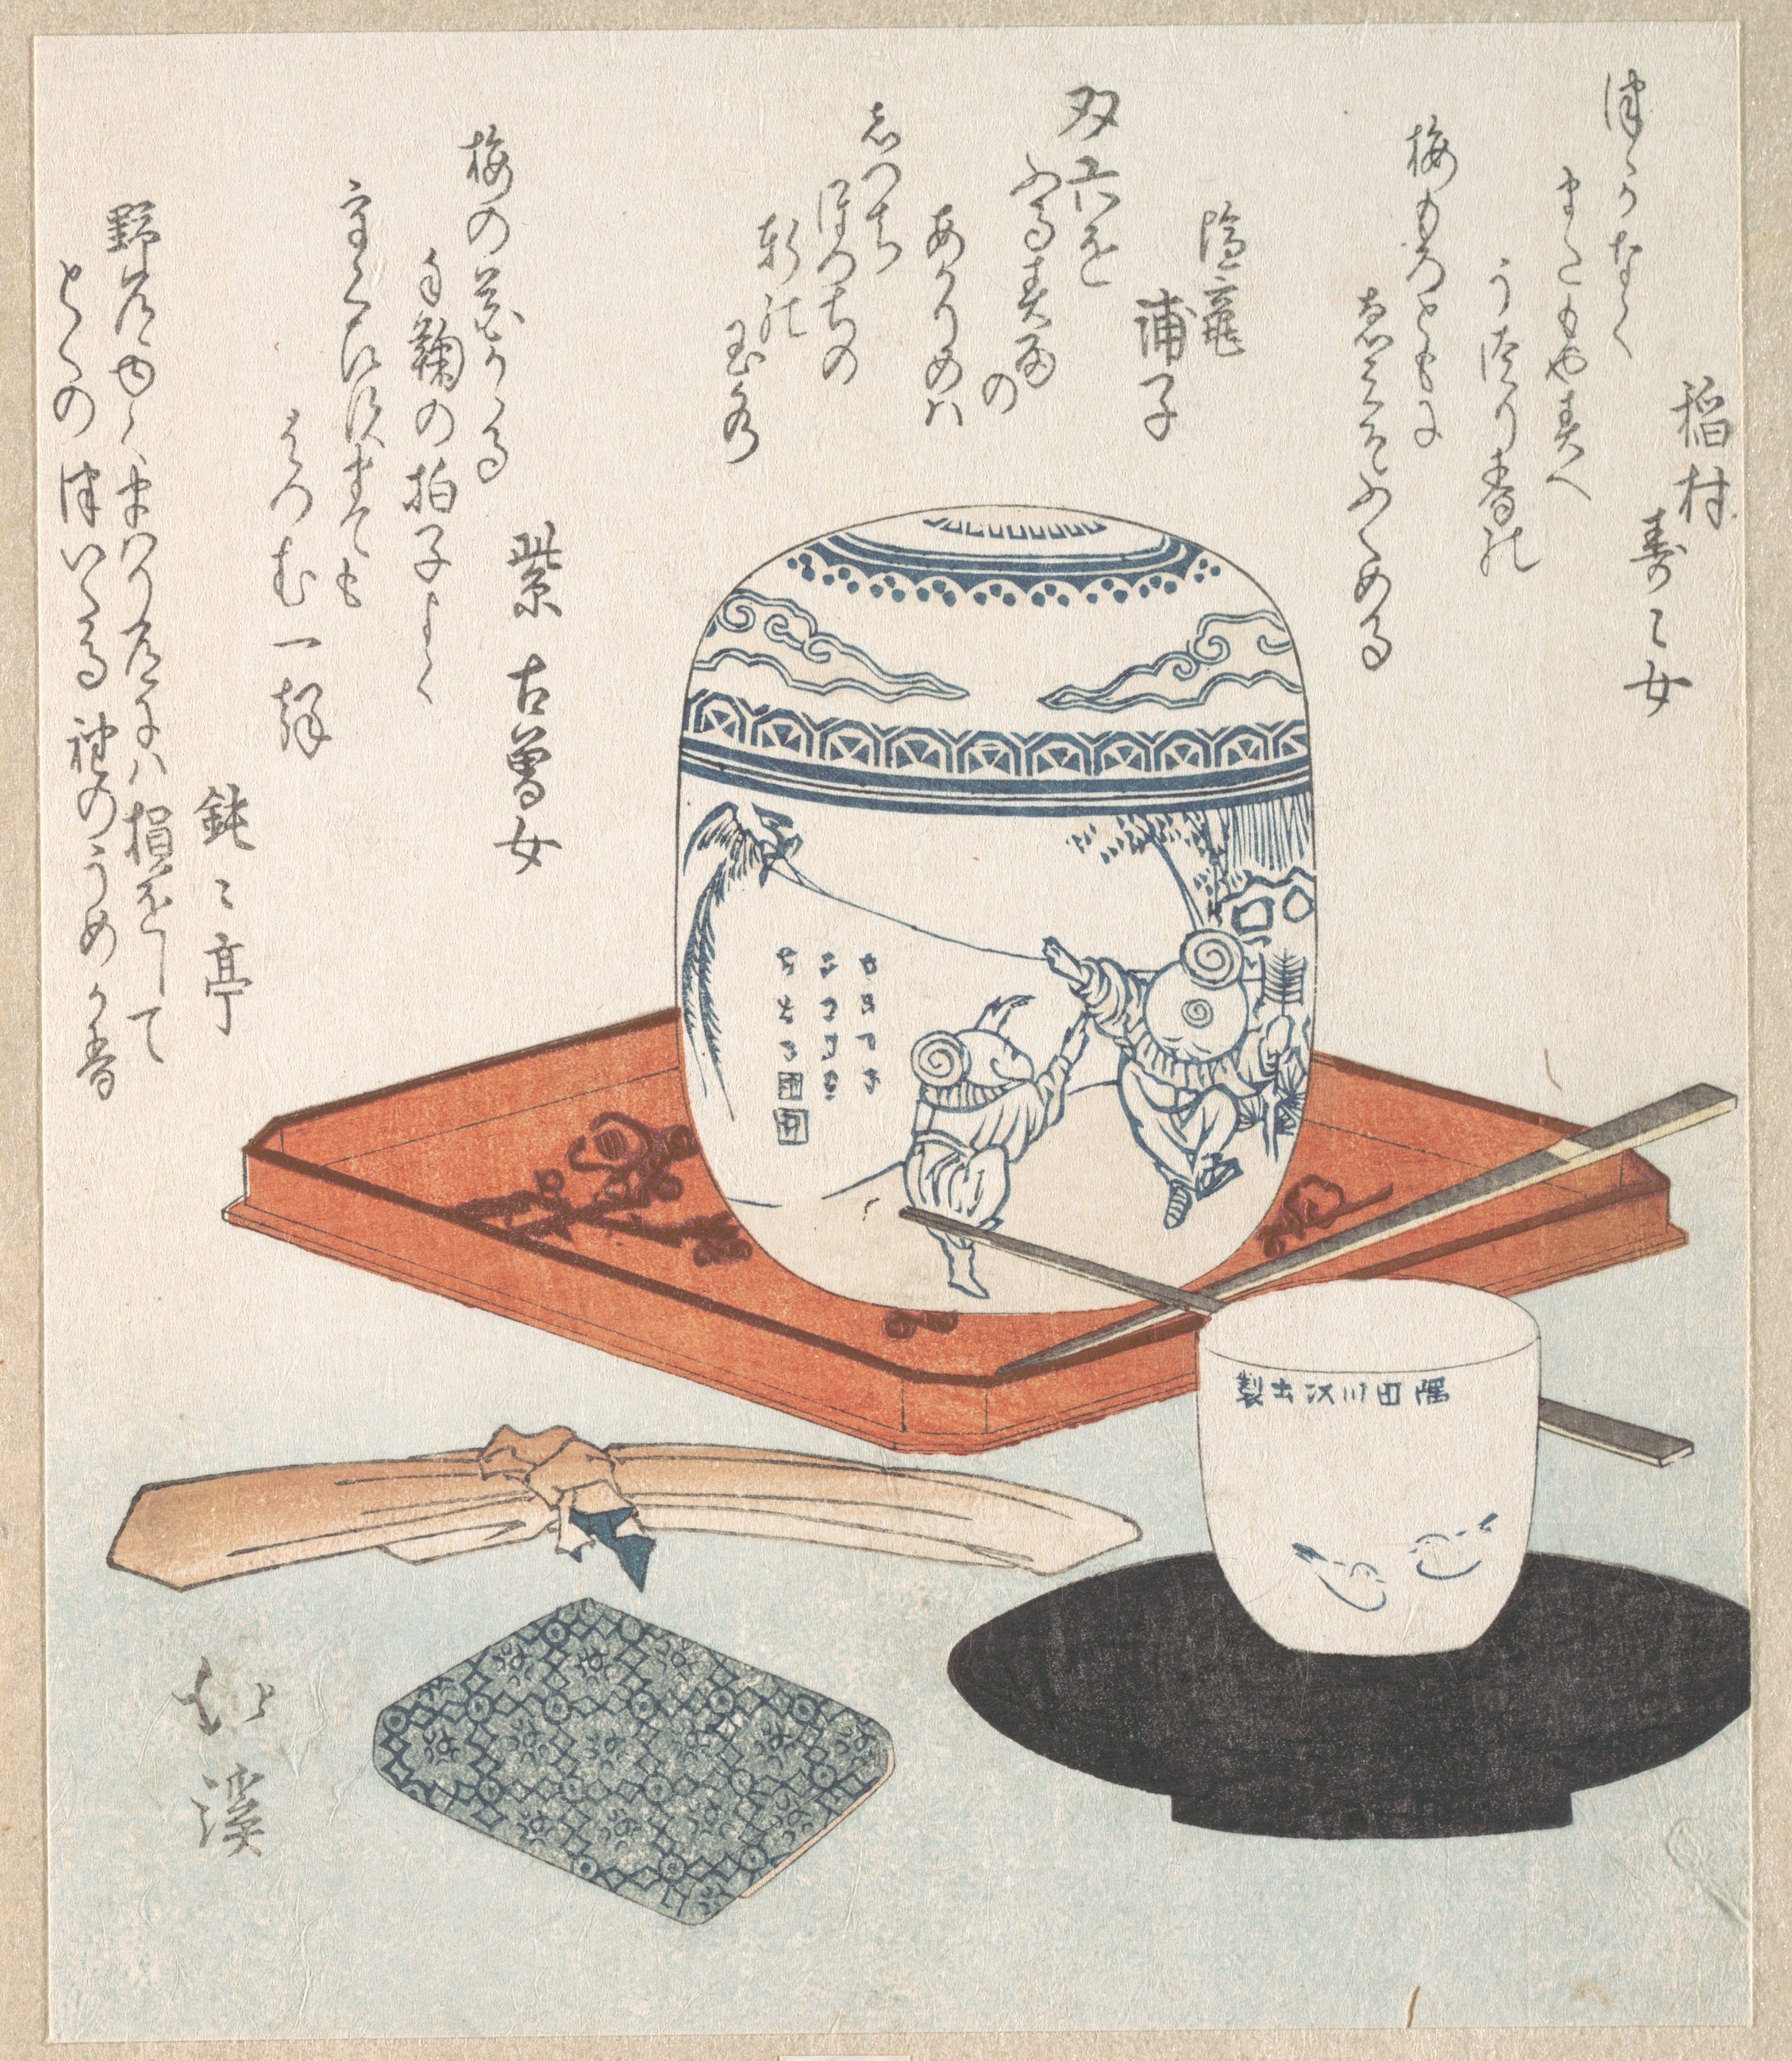 茶事 by Totoya Hokkei - 19世紀 - 19.7 x 16.7 cm 